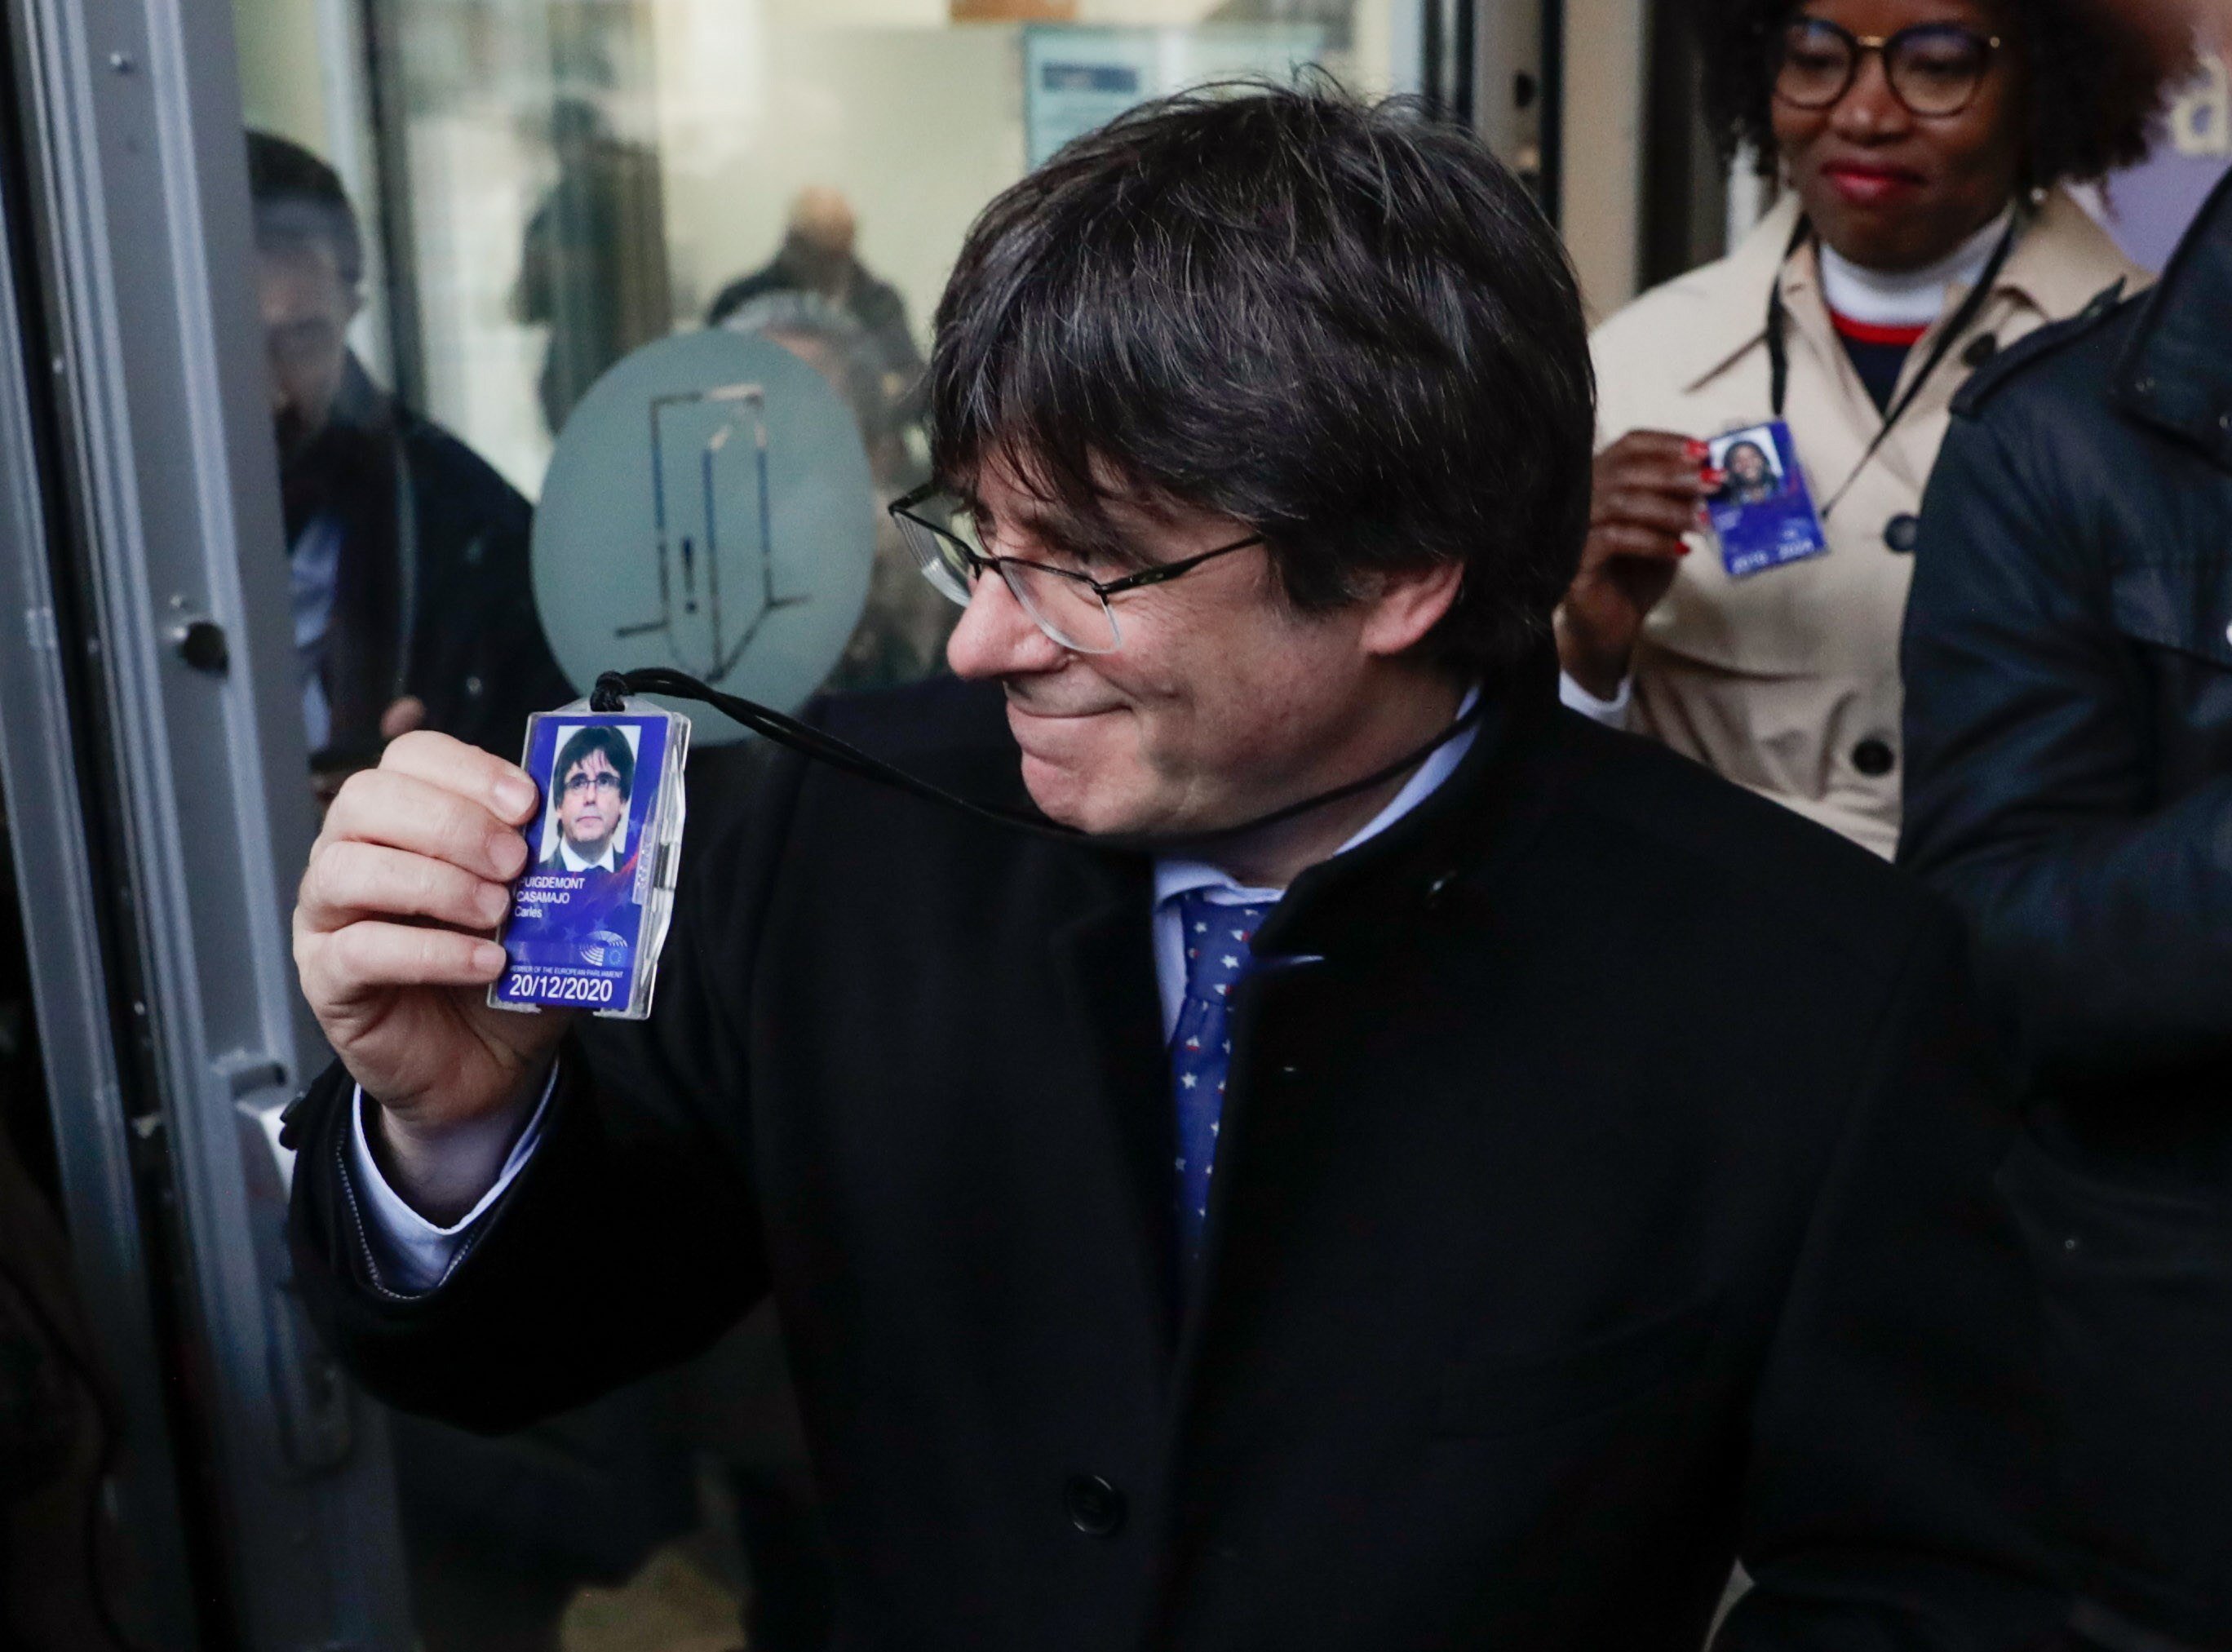 Les primeres hores de Puigdemont com a eurodiputat: "Em sento a casa"